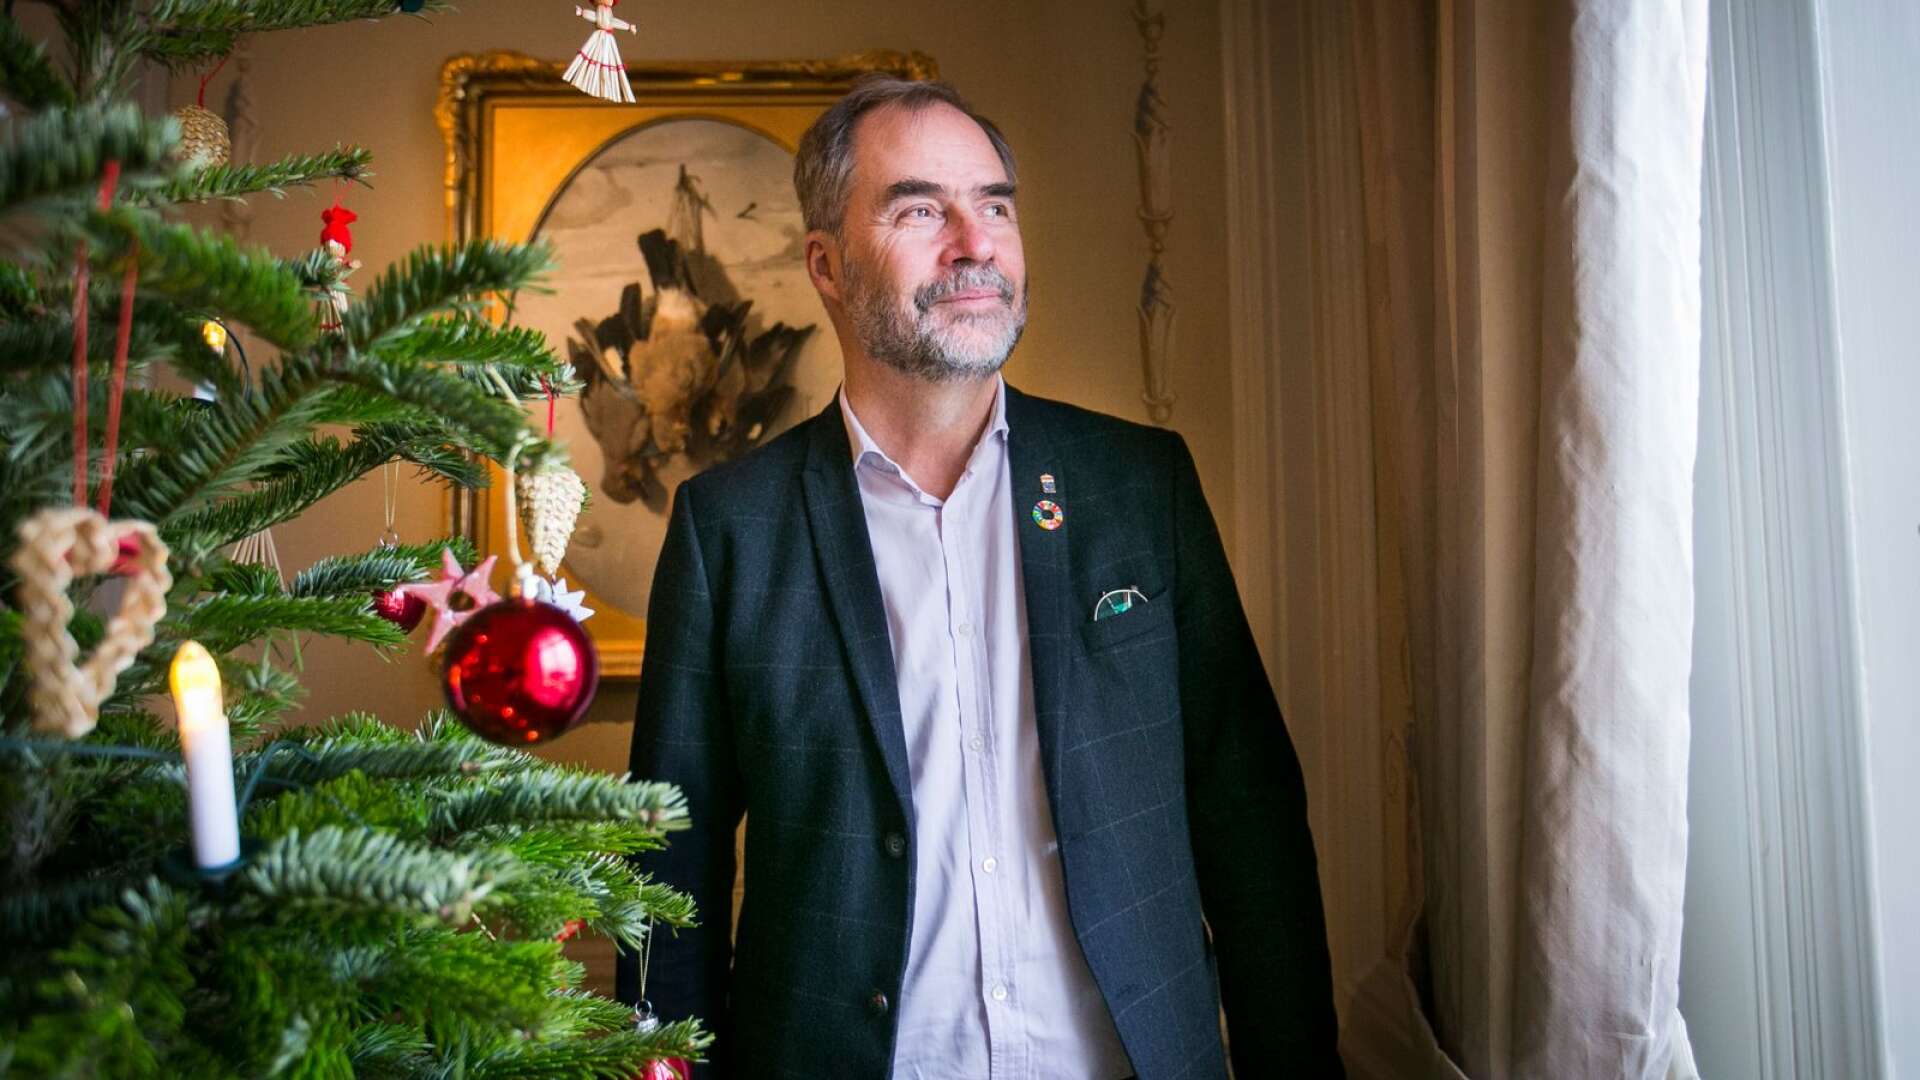 Värmlands landshövding Georg Andrén tror att det är viktigt att bevara julens magi.